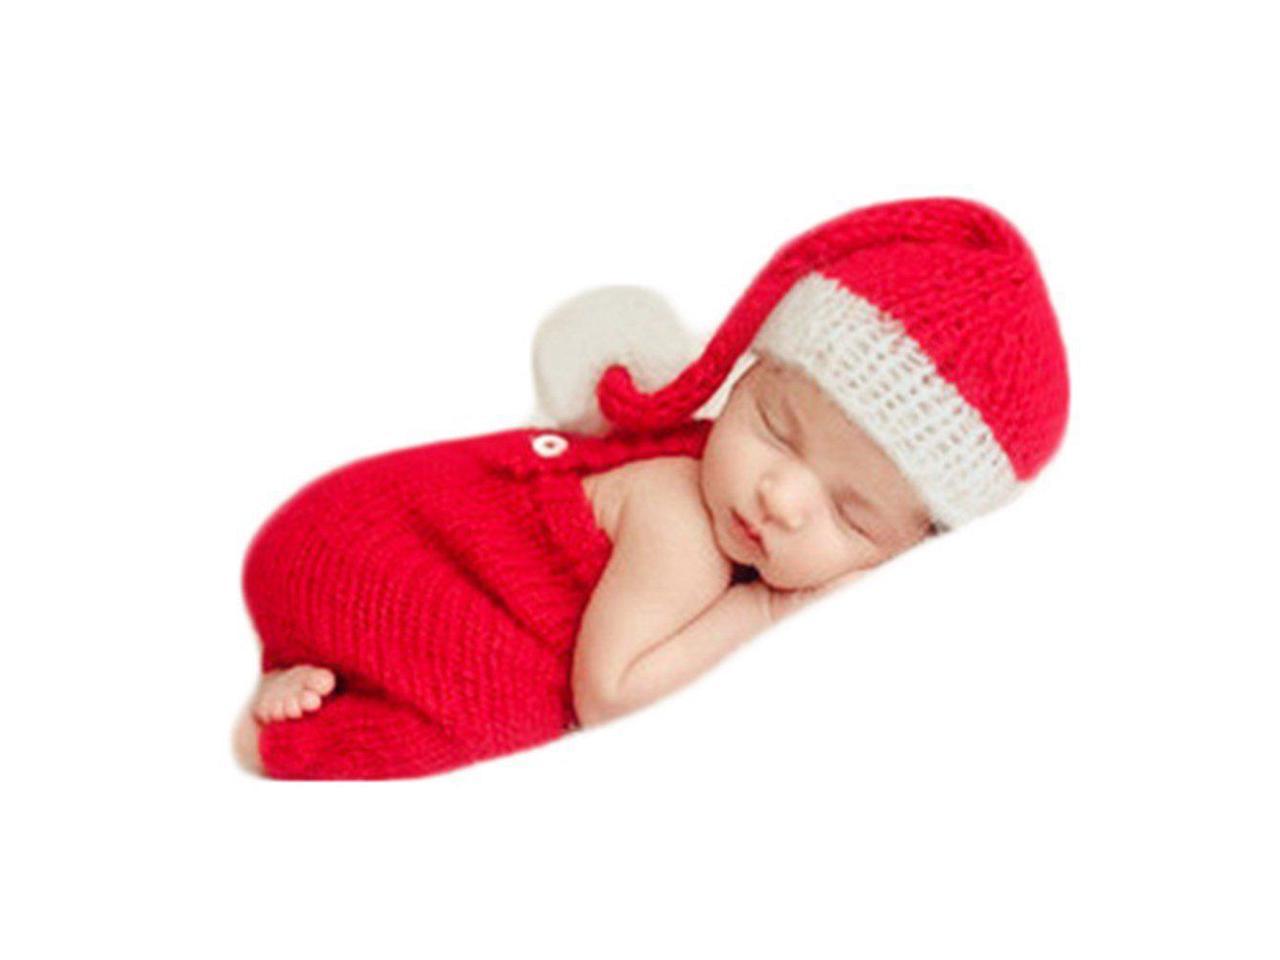 XIANZI Tenues De Photographie pour Bébés Newborn Baby Girl Boy Photography Prop Photo Costume Photo Photography Prop Outfits Newborn Baby Photography Props 